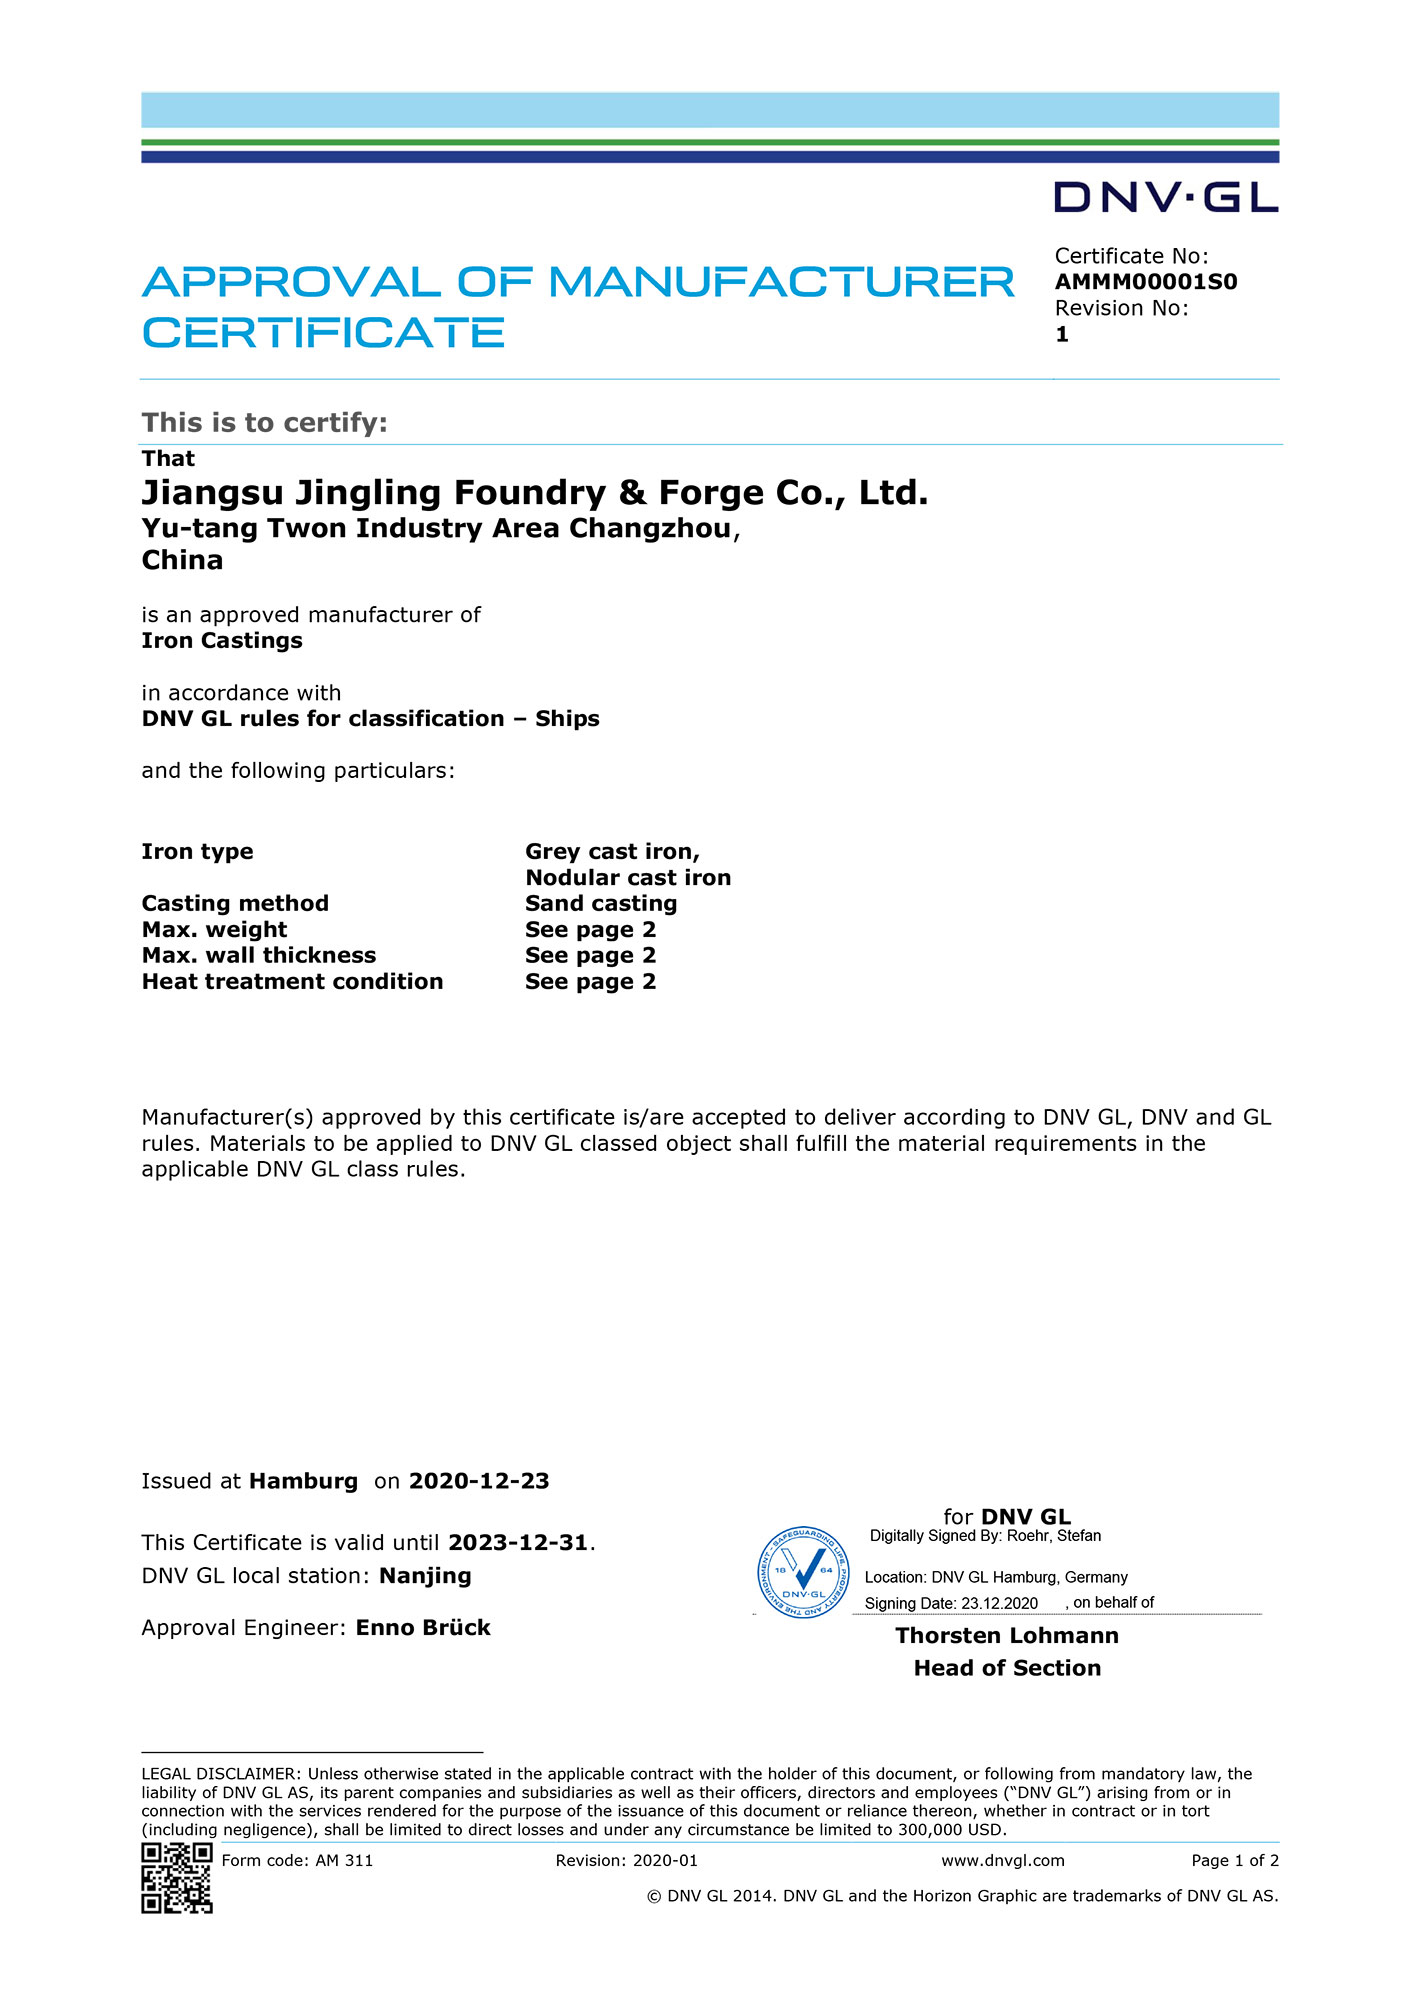 挪威DNV船级社认证证书